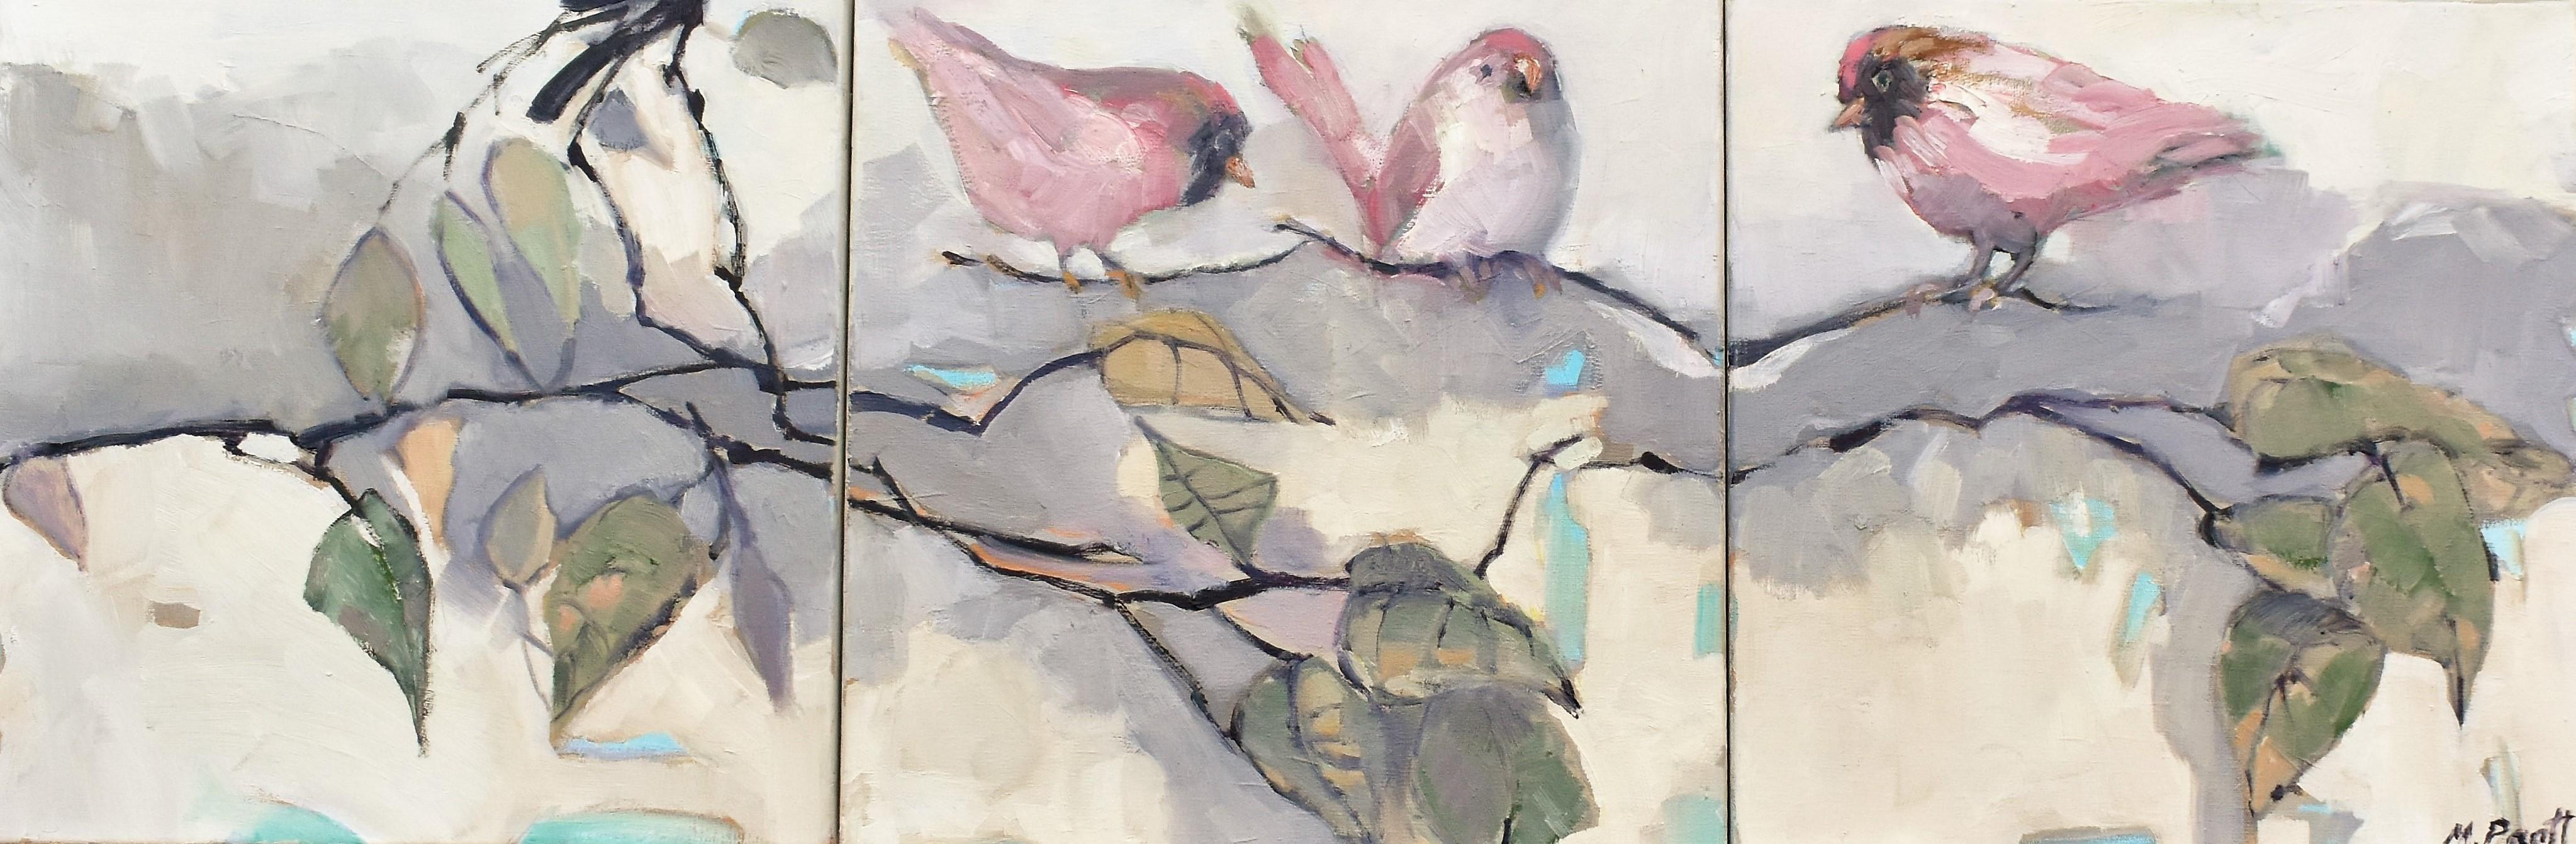 Mary Pratt Animal Painting - Pink Bird Club, Oil Painting